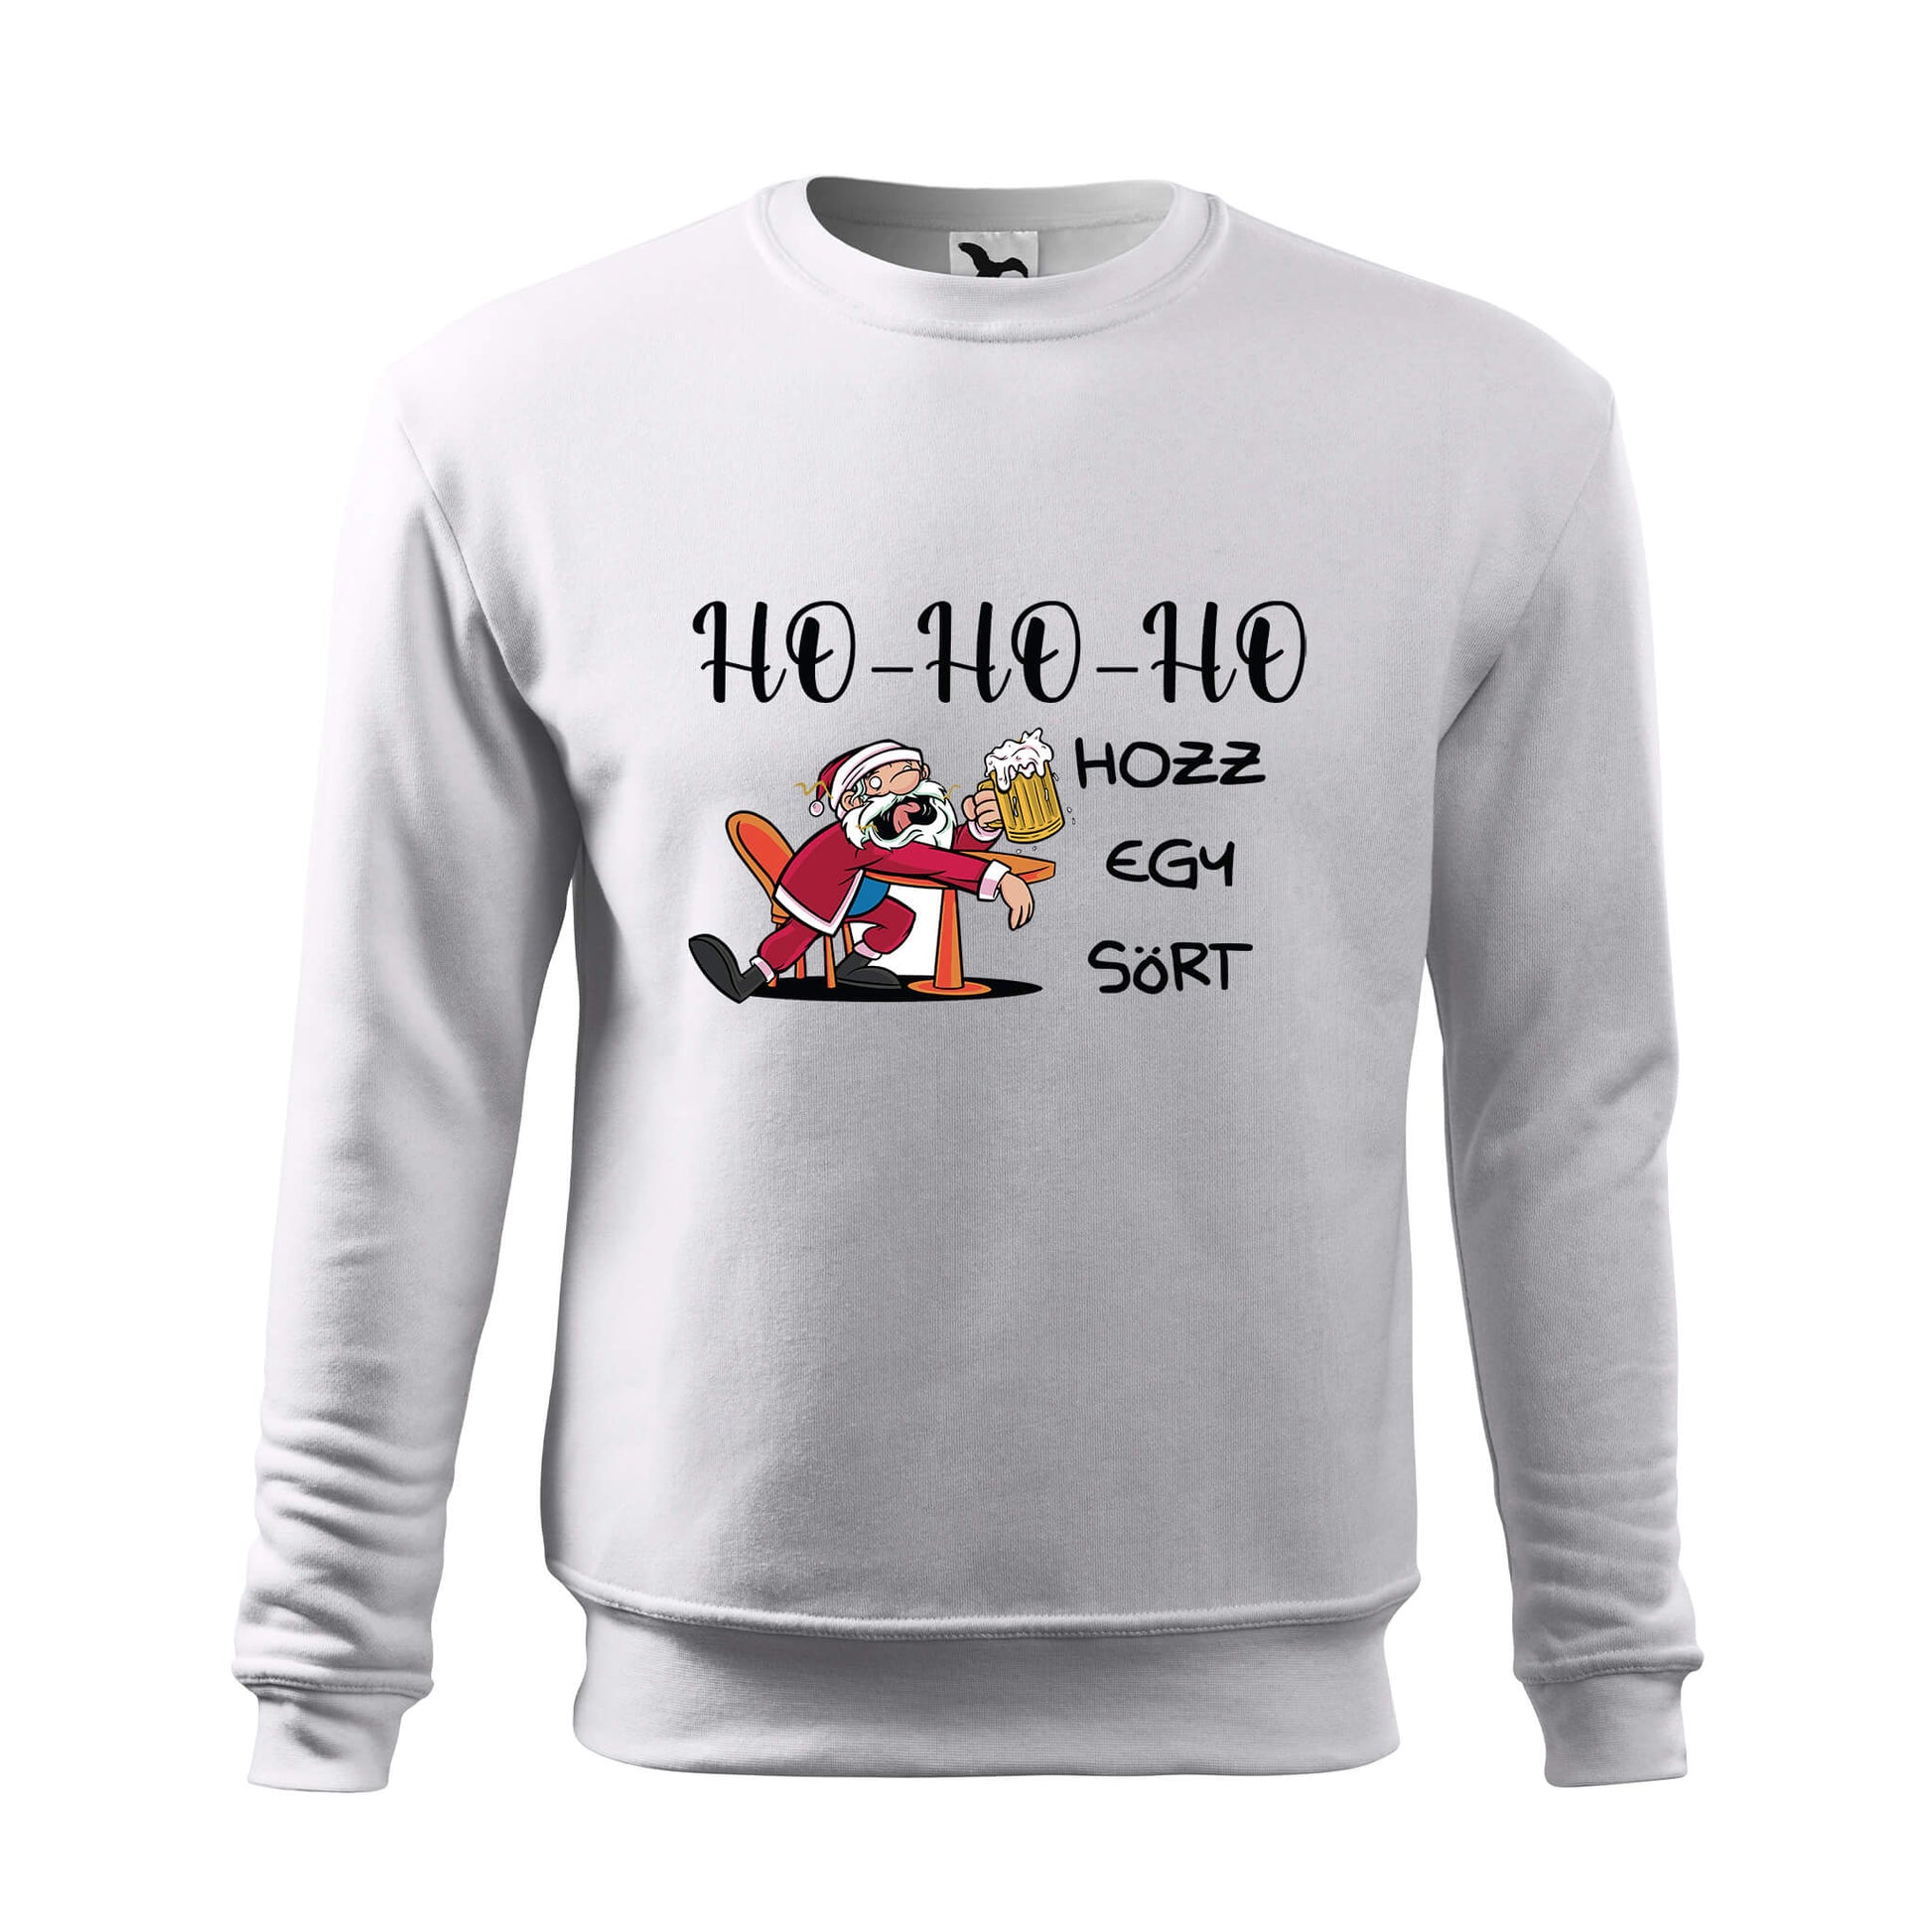 Ho-ho-ho hozz egy sort sweatshirt - rvdesignprint